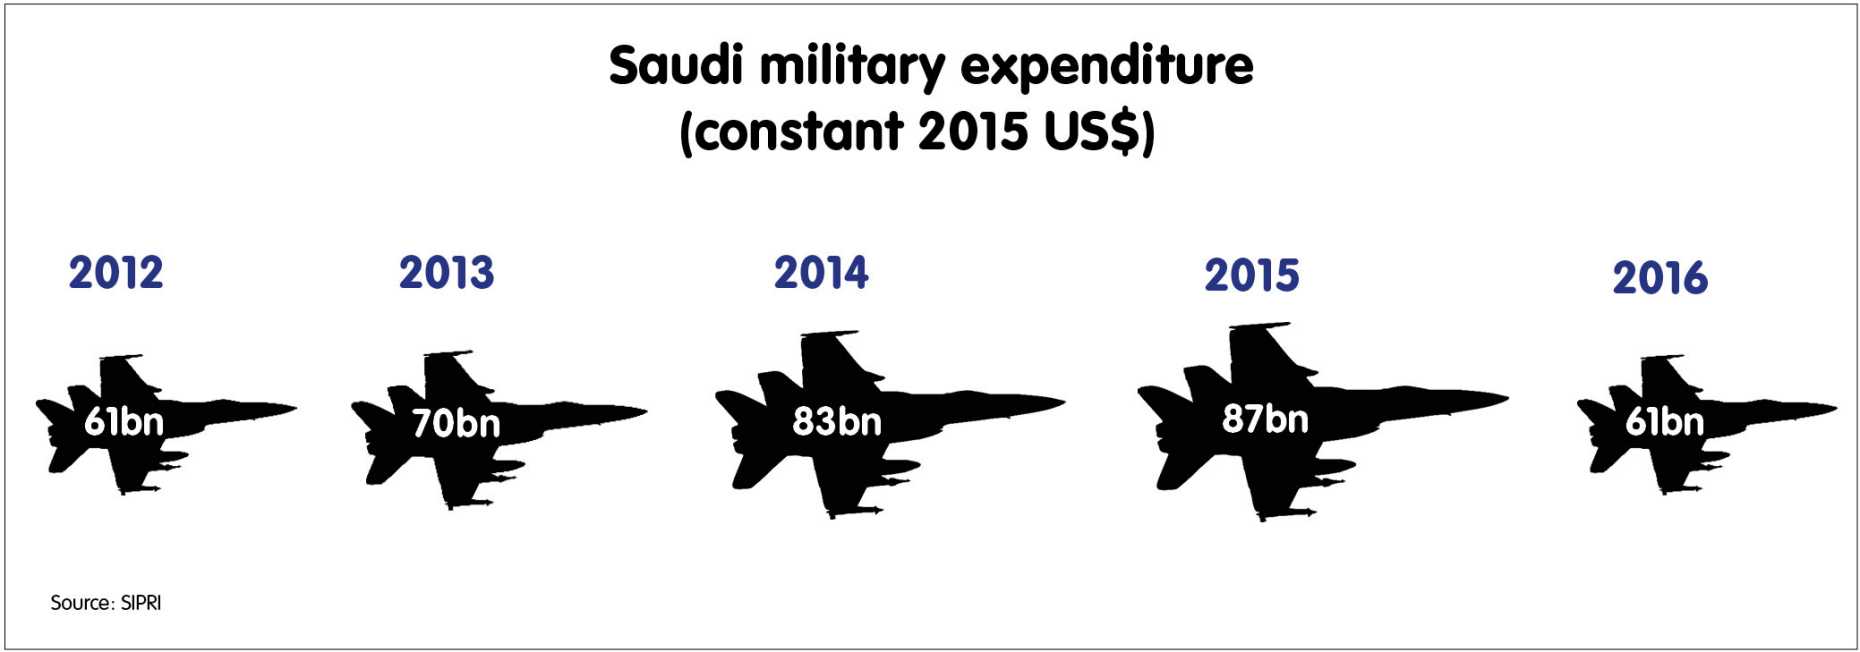 Saudi military expenditure